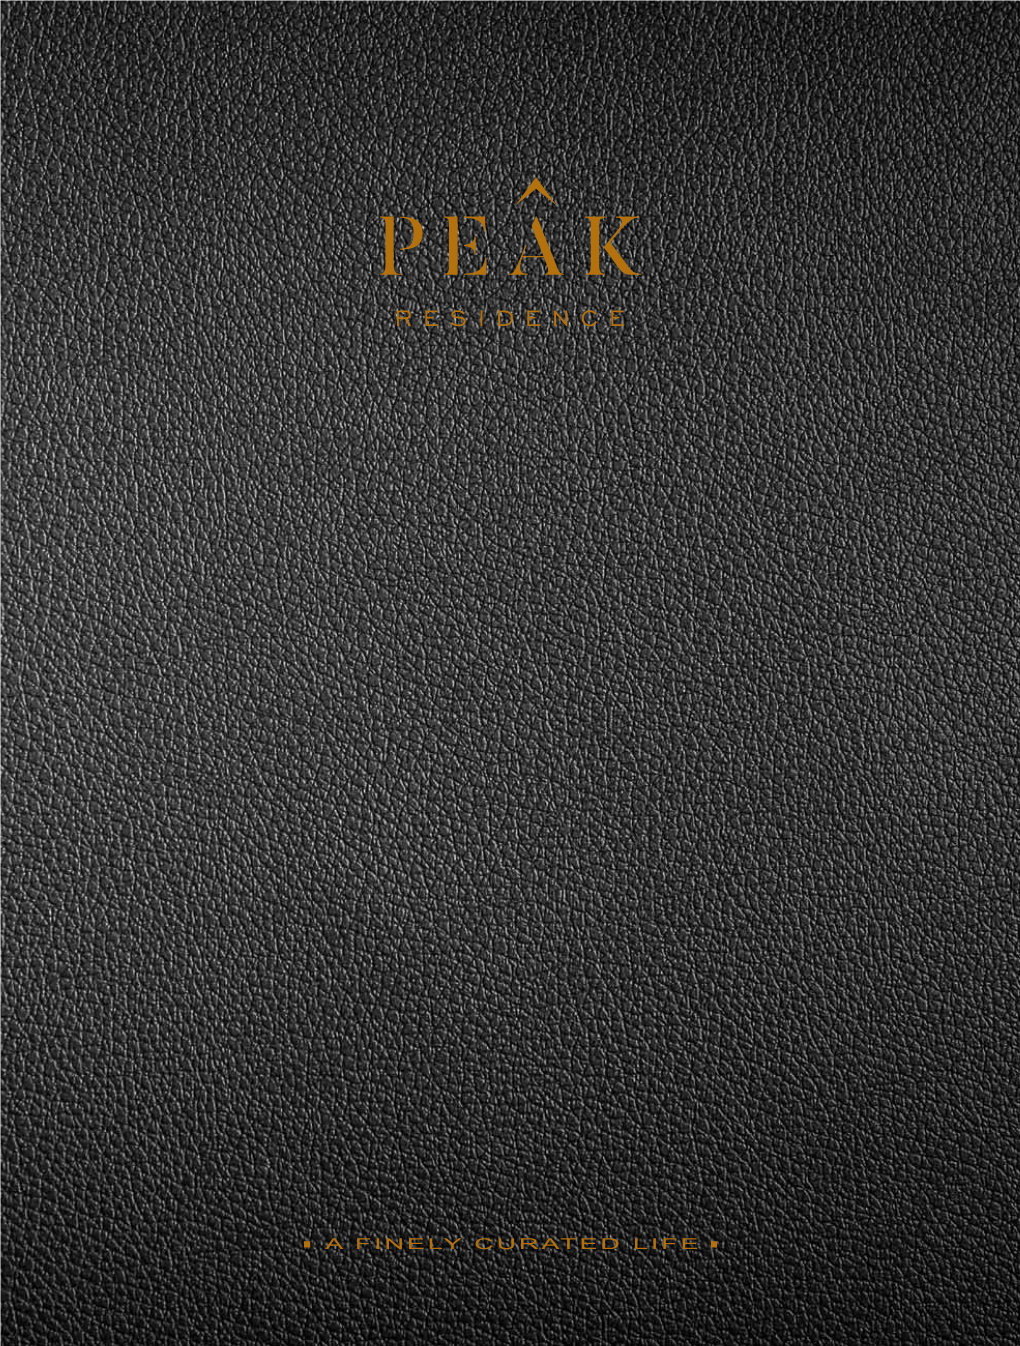 Peak Residence Brochure.Pdf